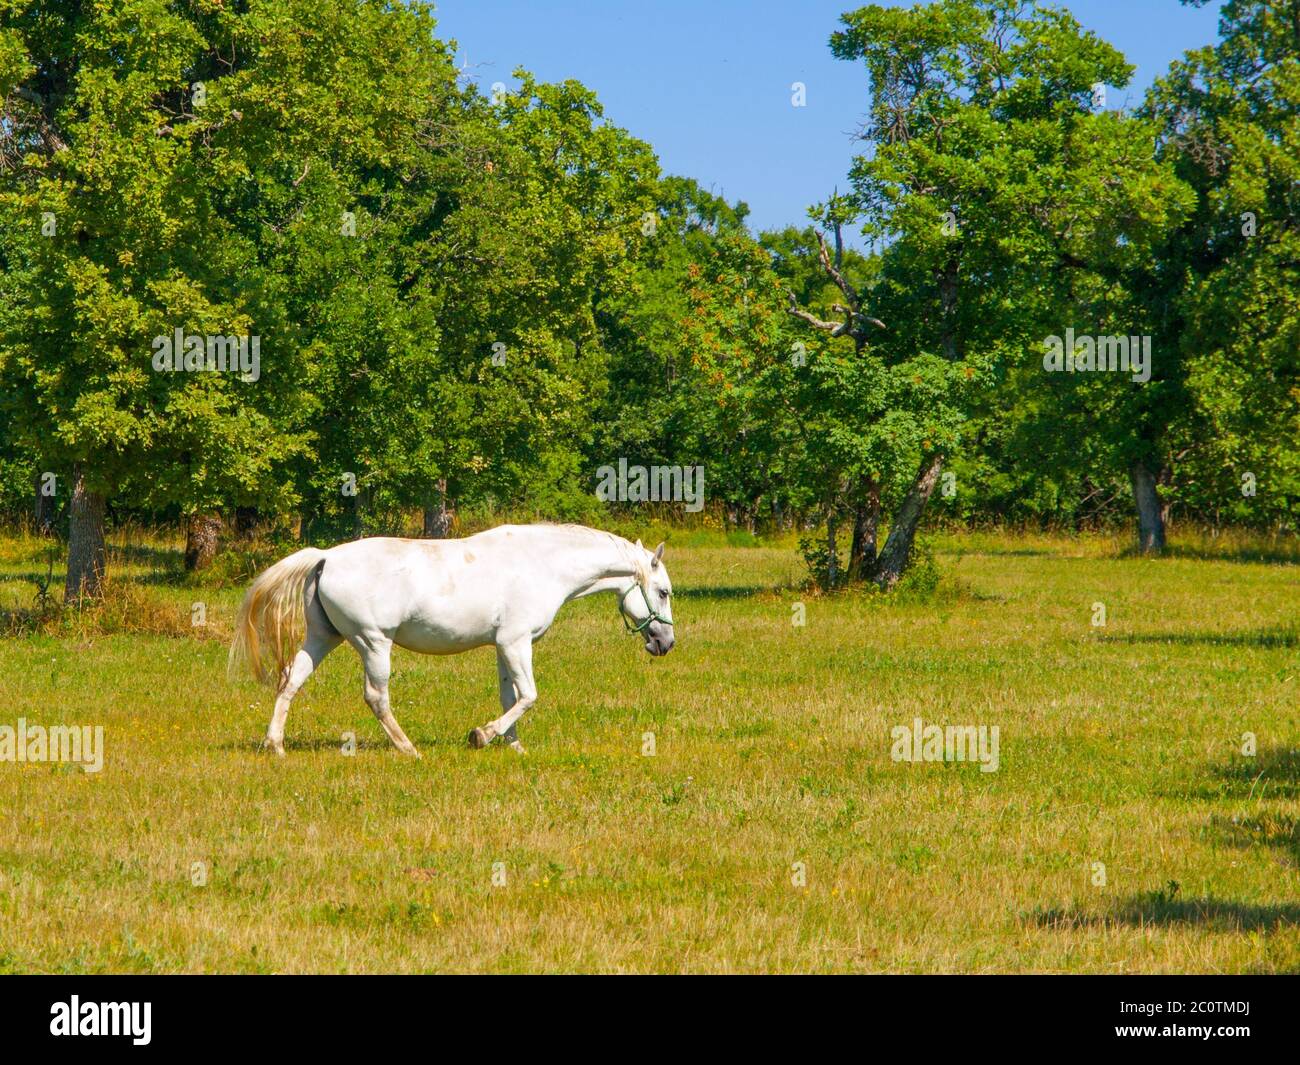 Lipizzaner stallion walks on pasture in sunny day, Lipica, Slovenia Stock Photo